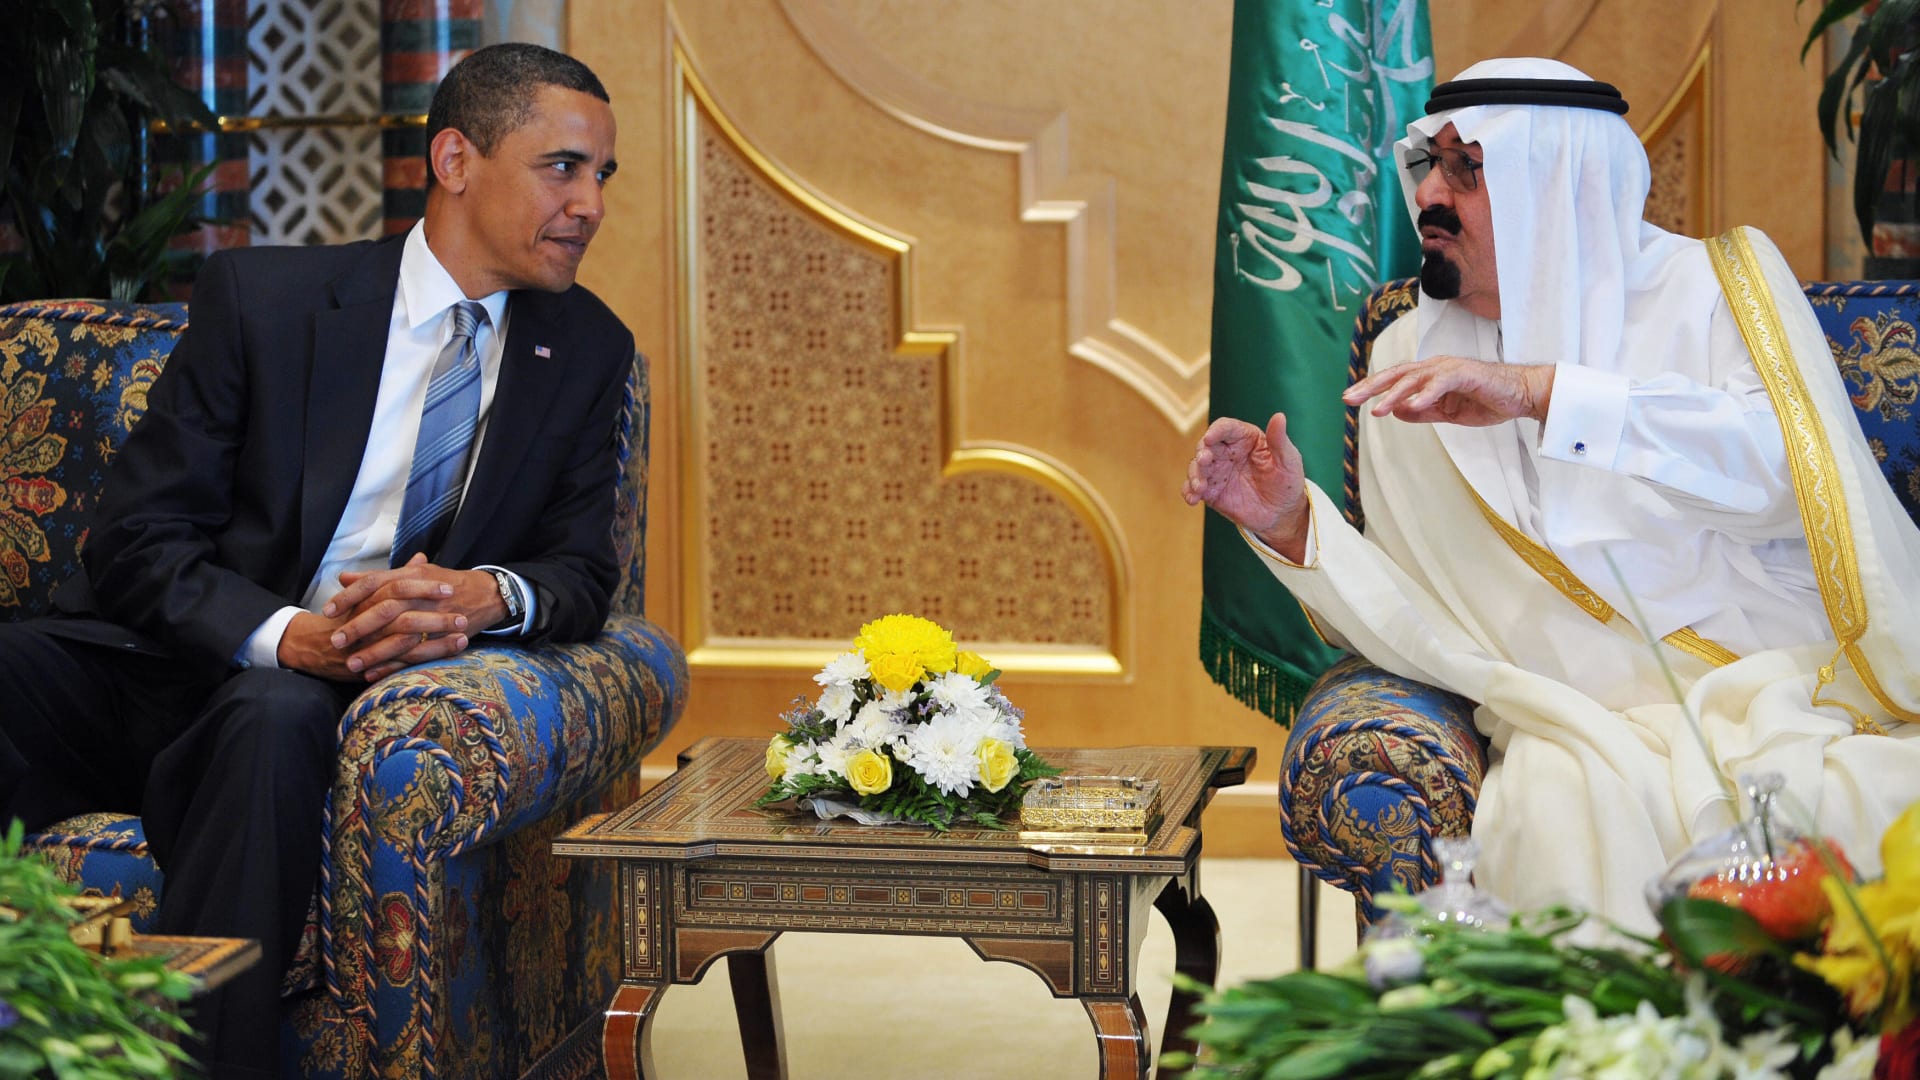 صورة أرشيفية للملك عبدالله يتحدث مع أوباما خلال زيارته للسعودية في يونيو 2009